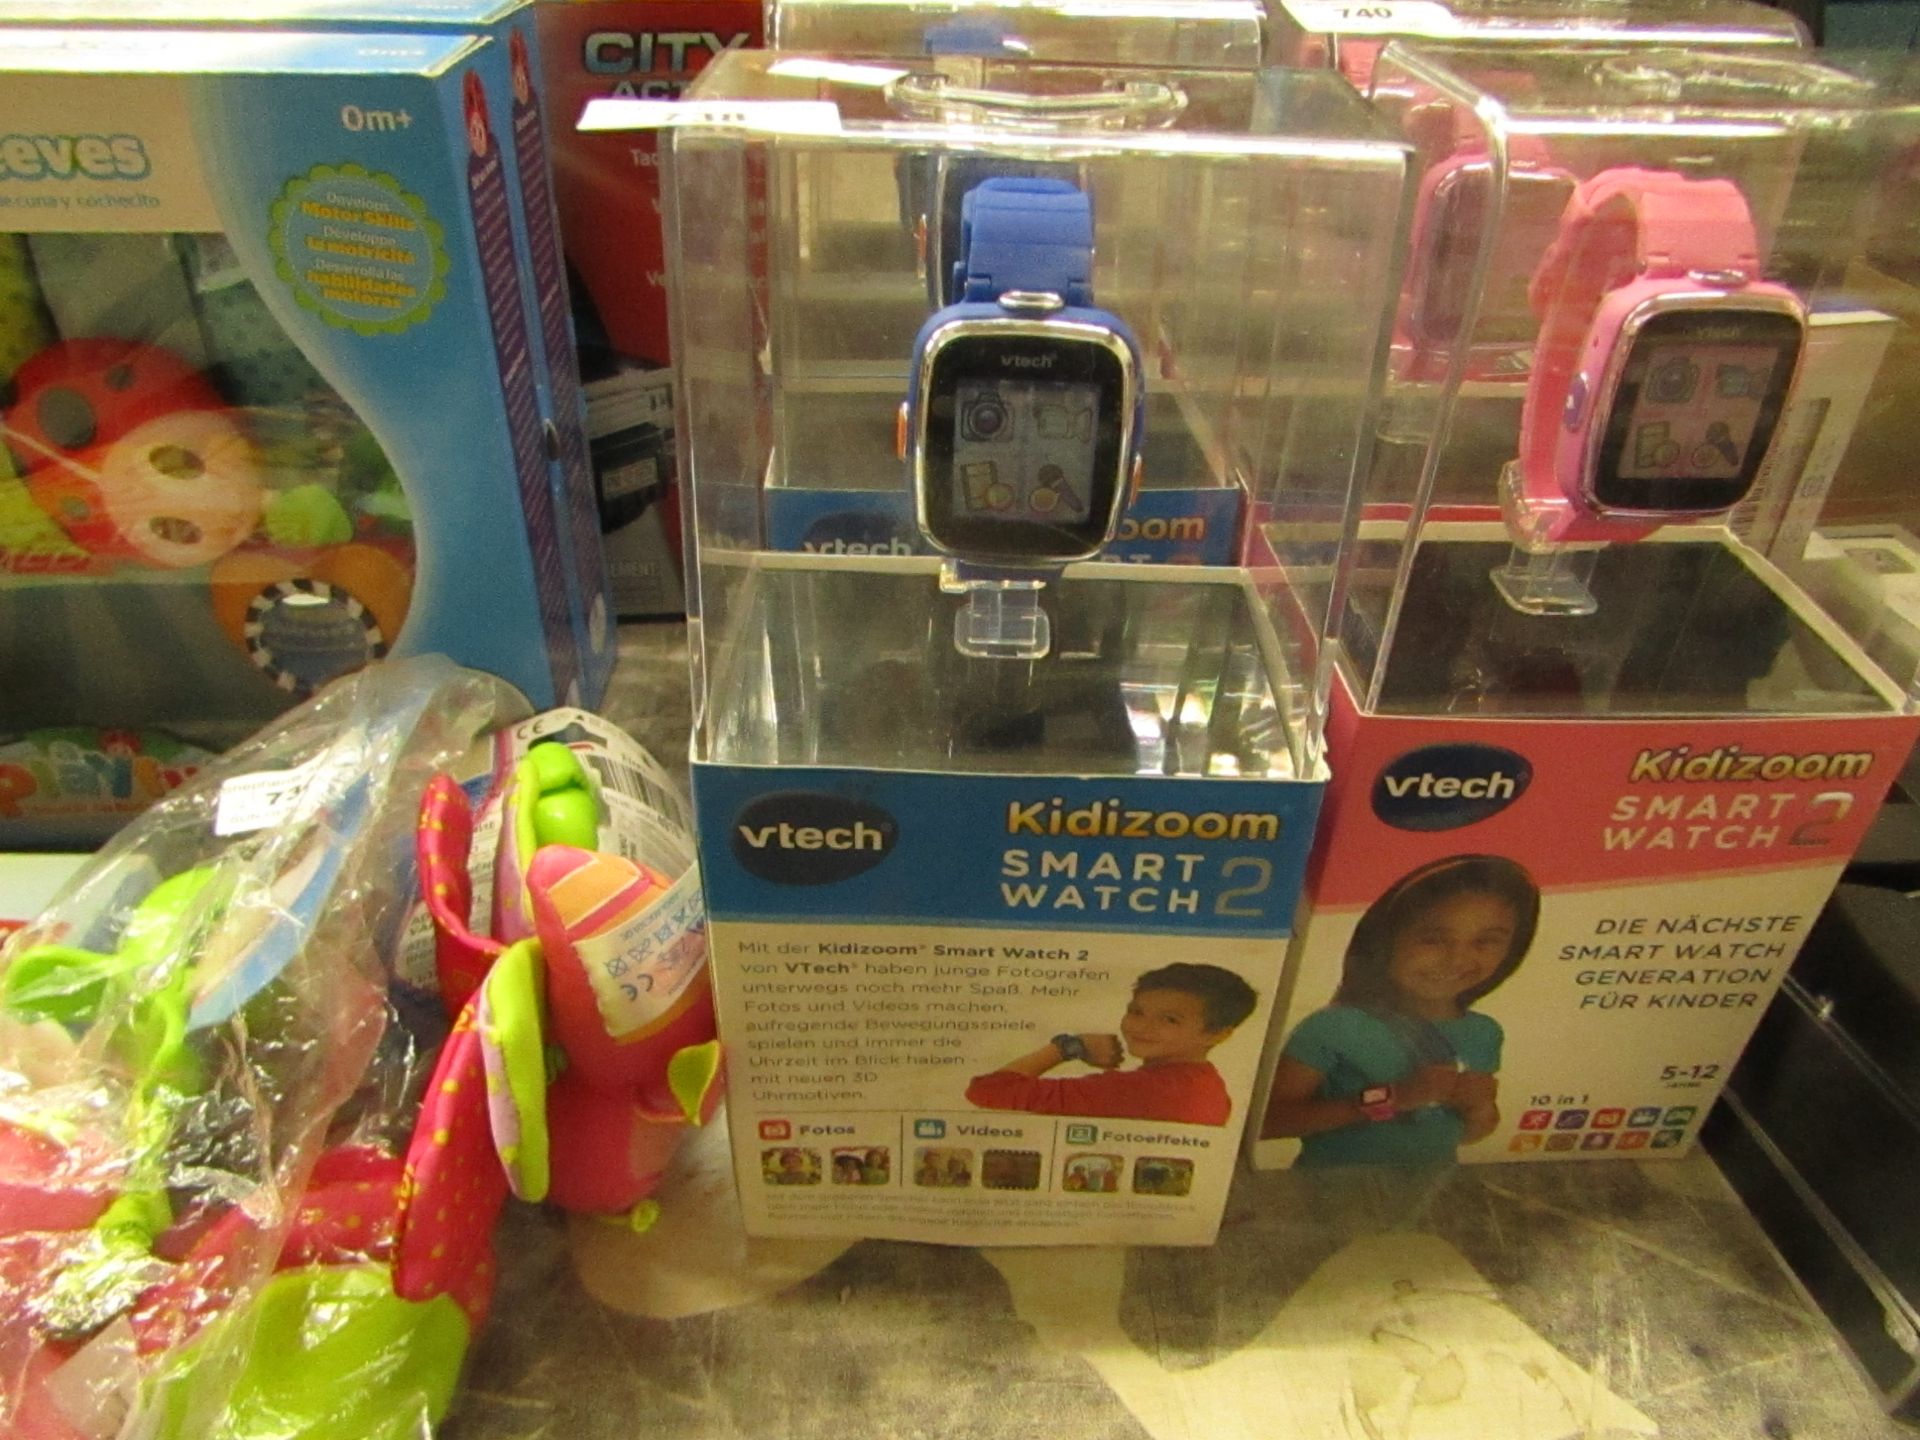 V tech Kiddie Zoom Smart watch 2, looks new nad unused in packaging, RRp Circa £40